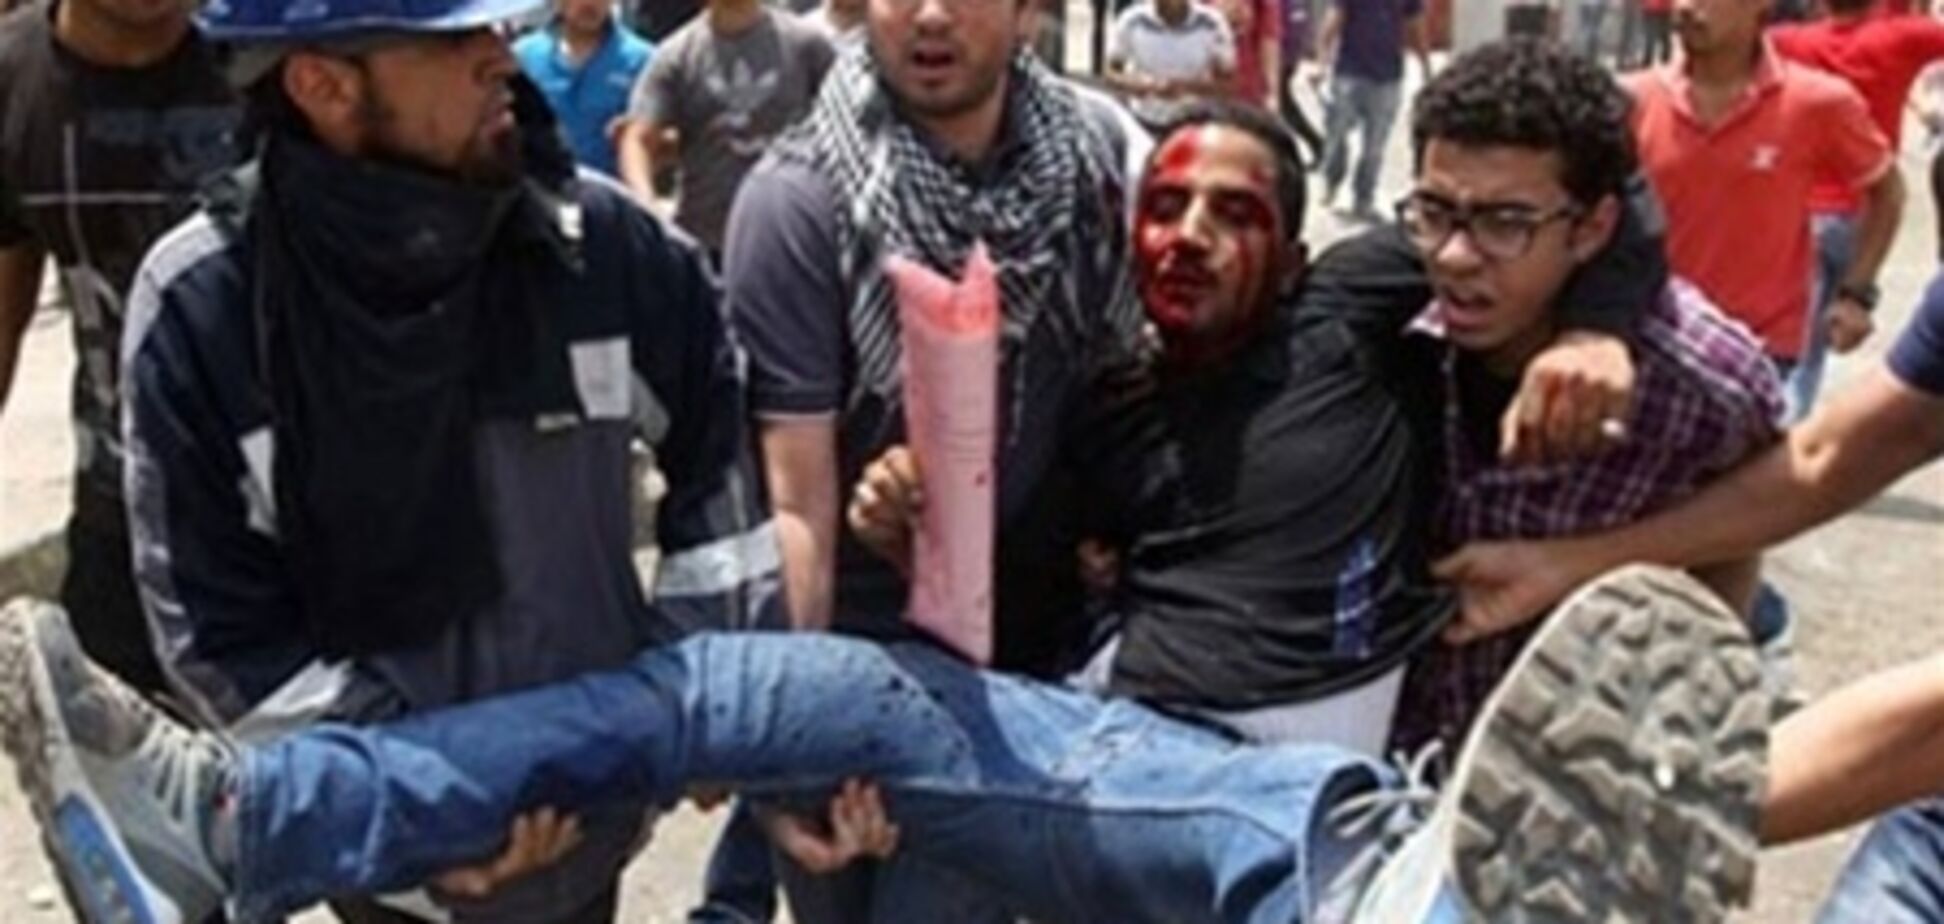 СМИ: в Египте протестующих оперировали без анестезии